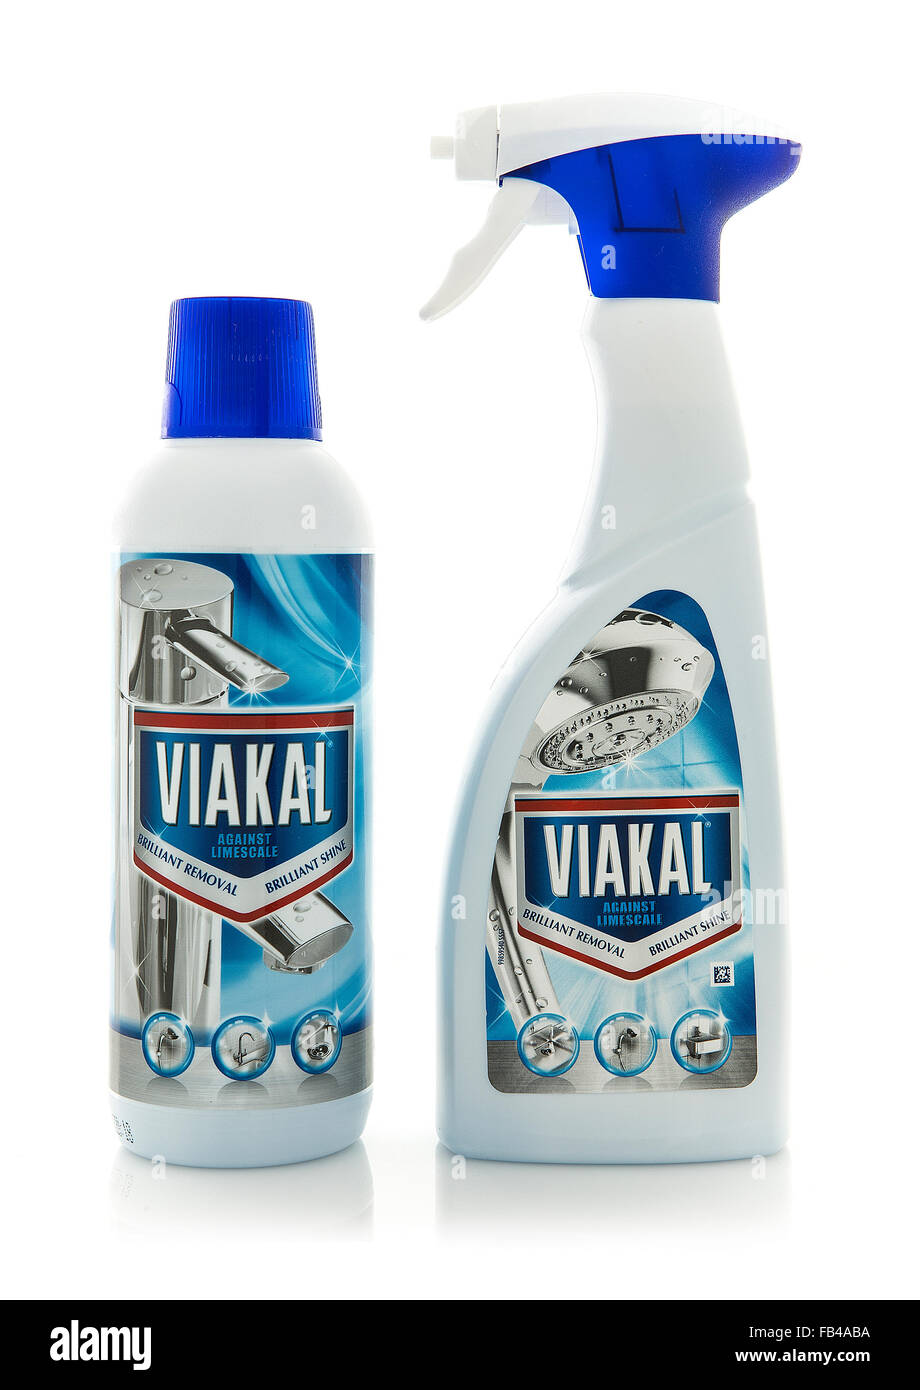 Flasche und Spry von Viakal Kalk Reiniger auf weißem Hintergrund Stockfoto